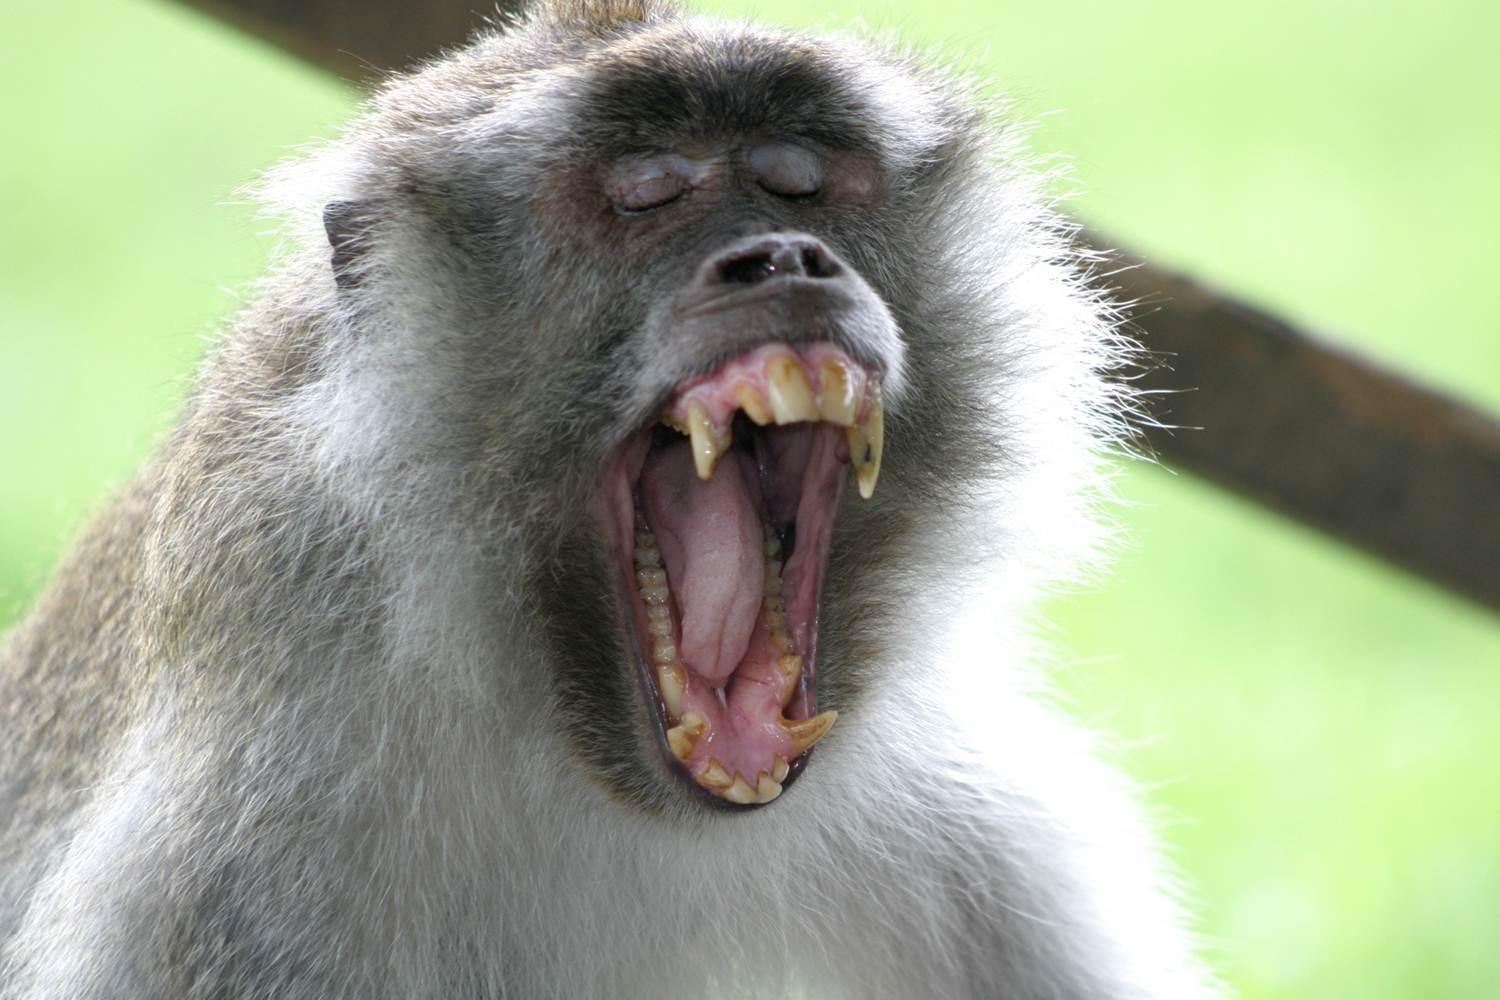 A cynomolgus macaque yawns, displaying its teeth